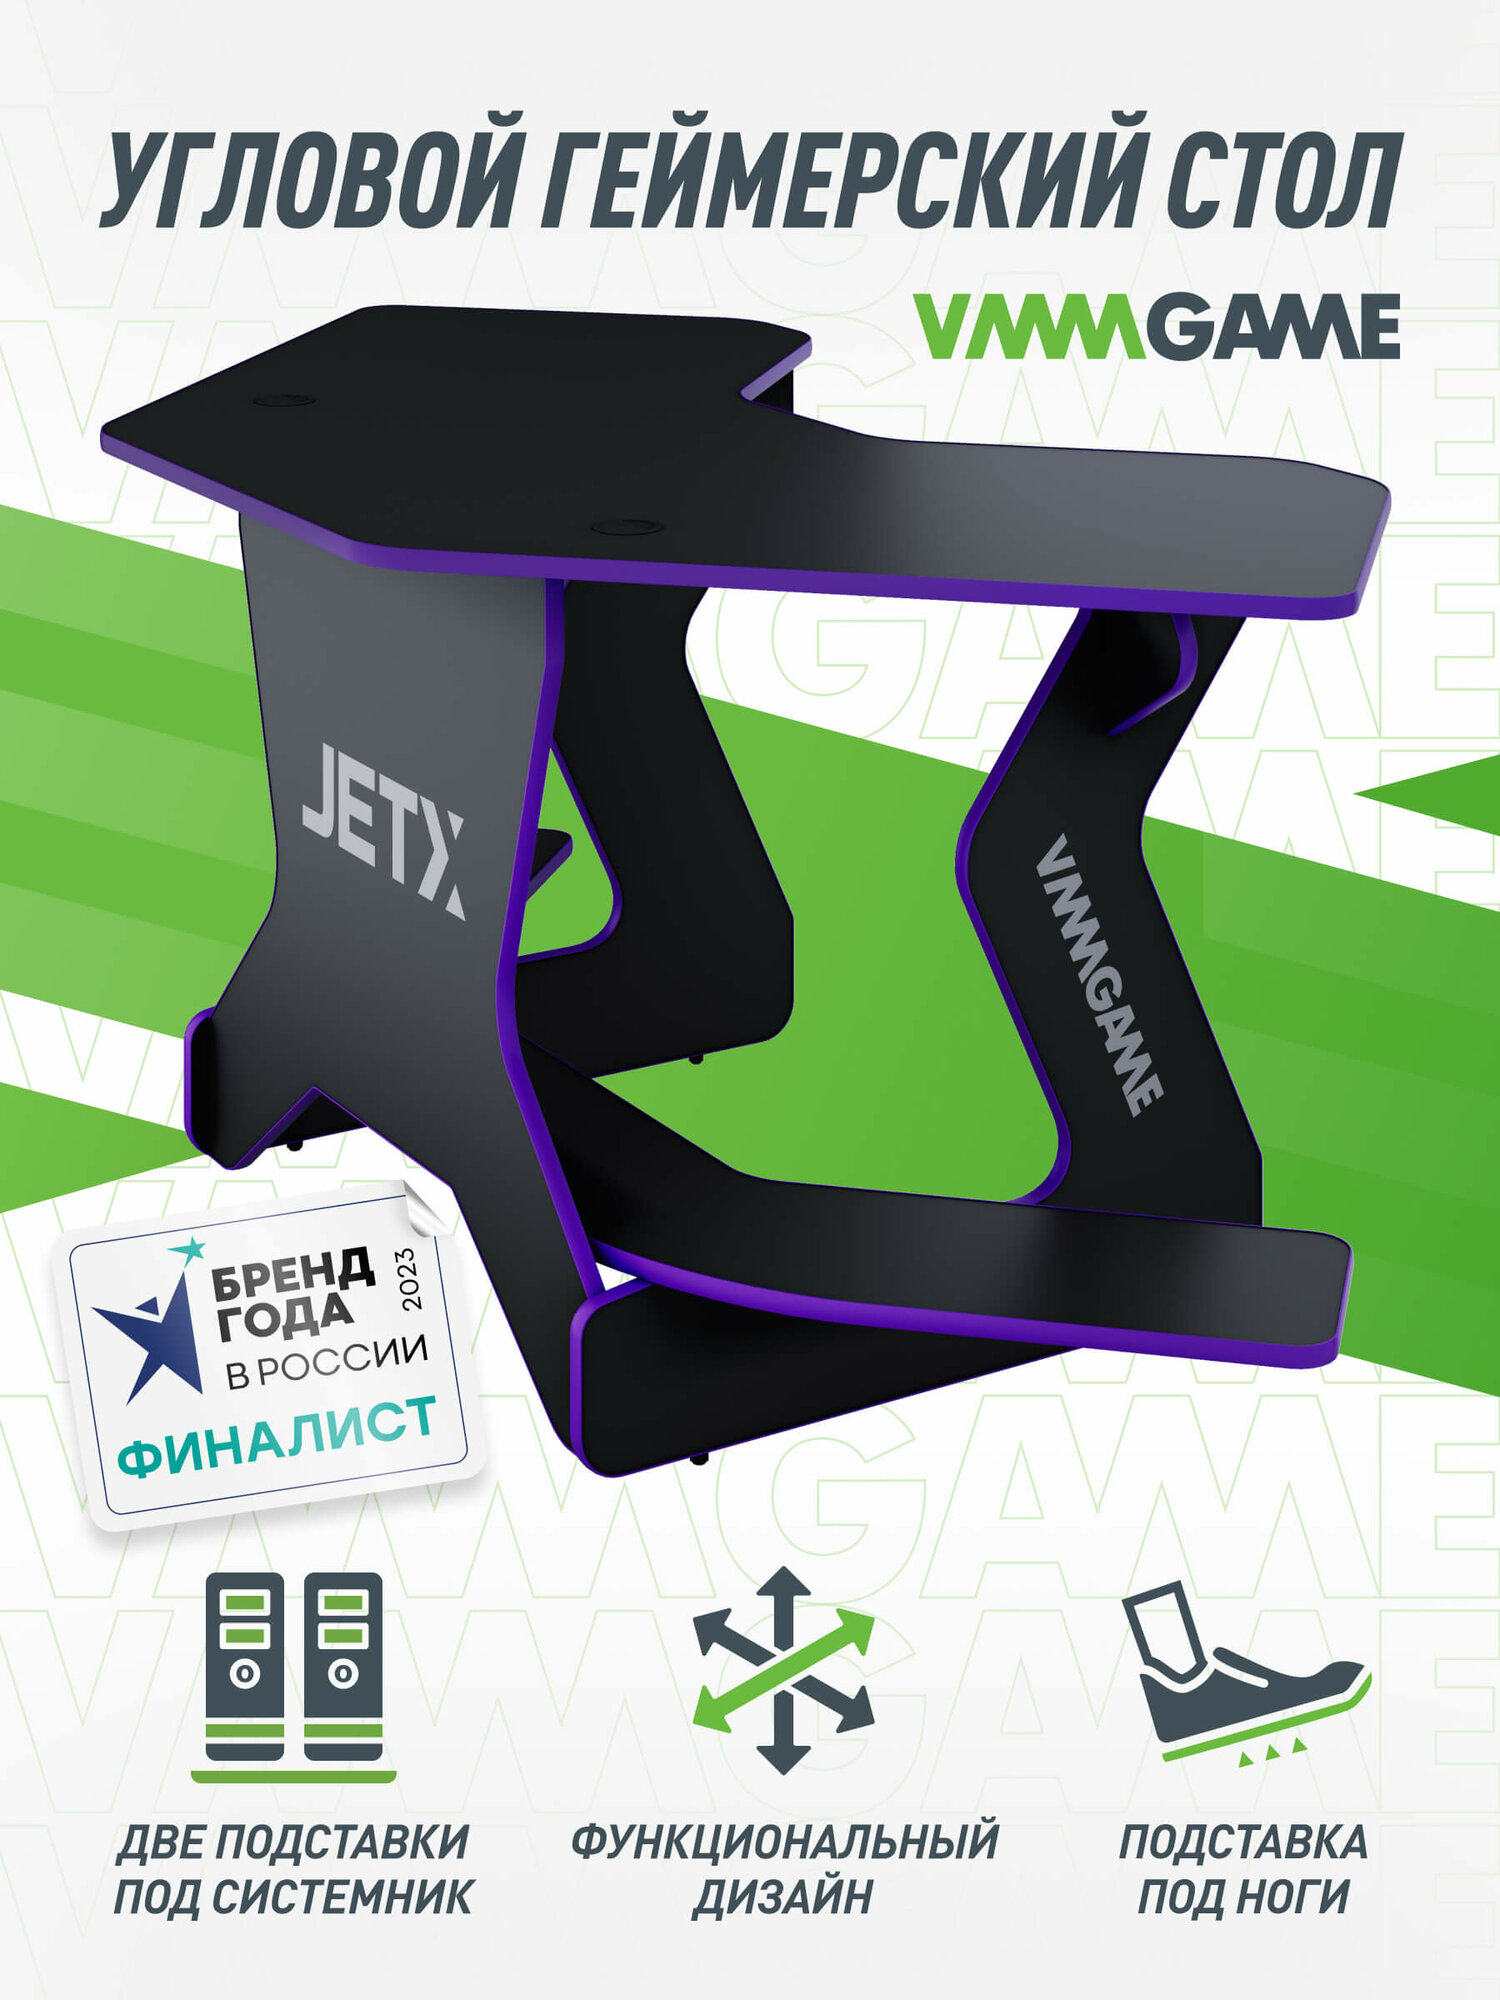 Игровой угловой компьютерный cтол VMMGAME JETX